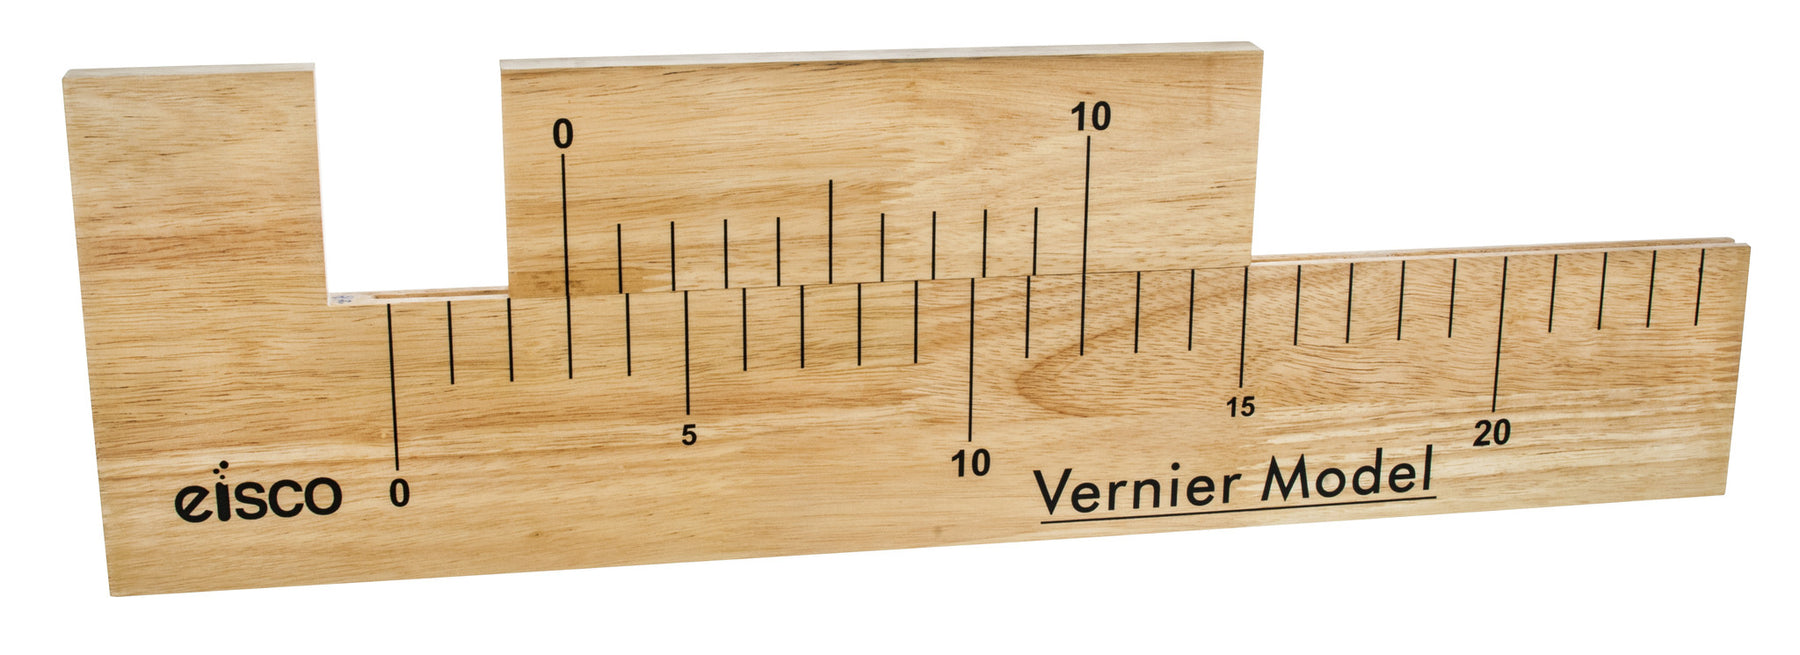 Vernier Caliper Demonstration Wooden